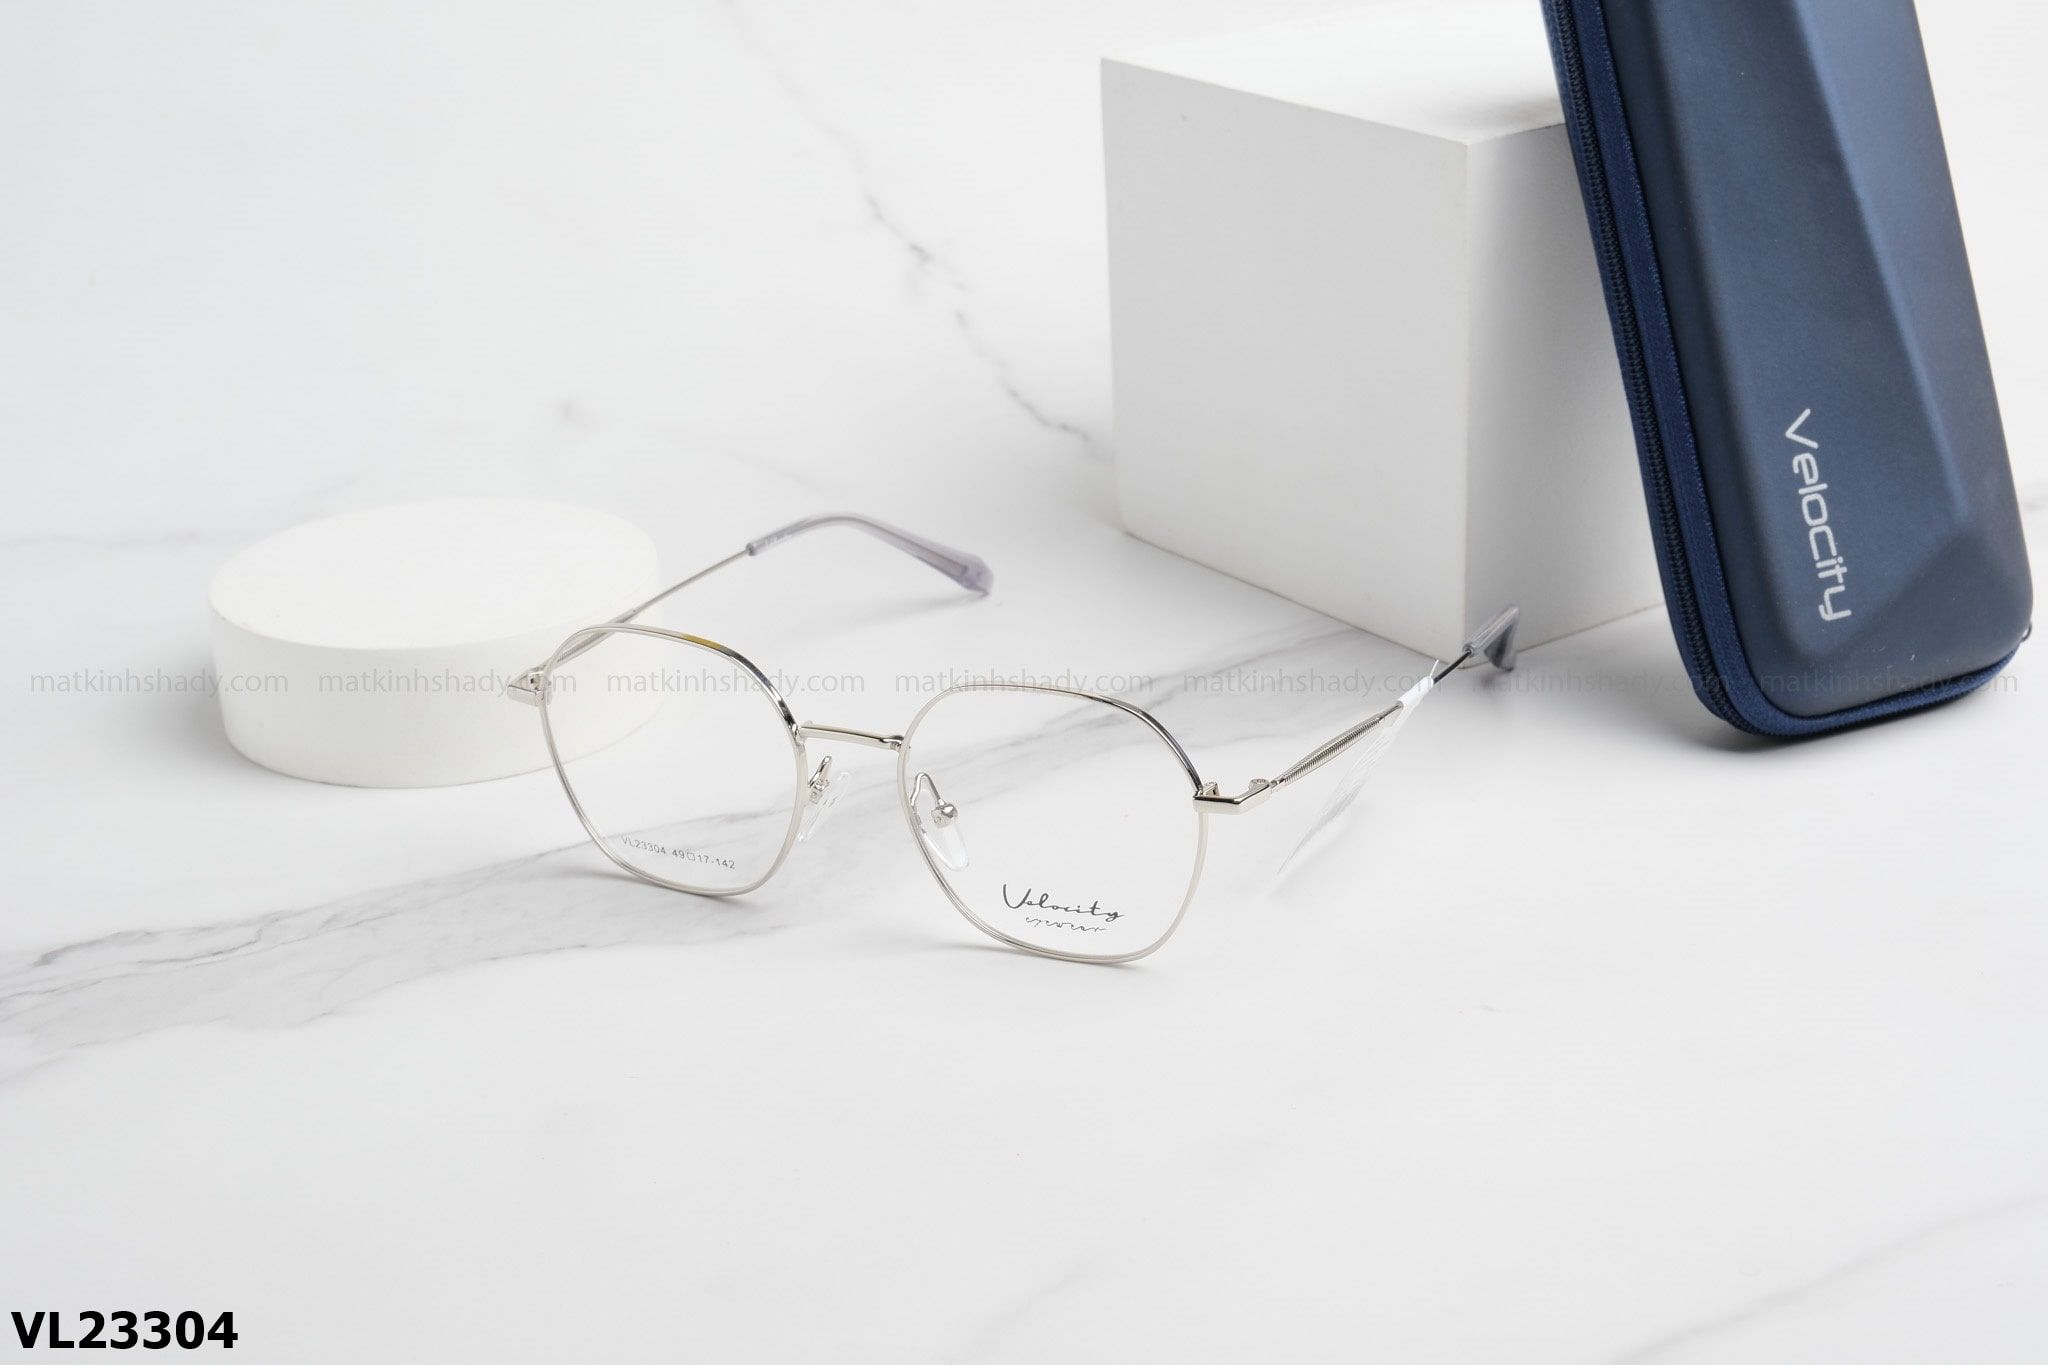  Velocity Eyewear - Glasses - VL23304 